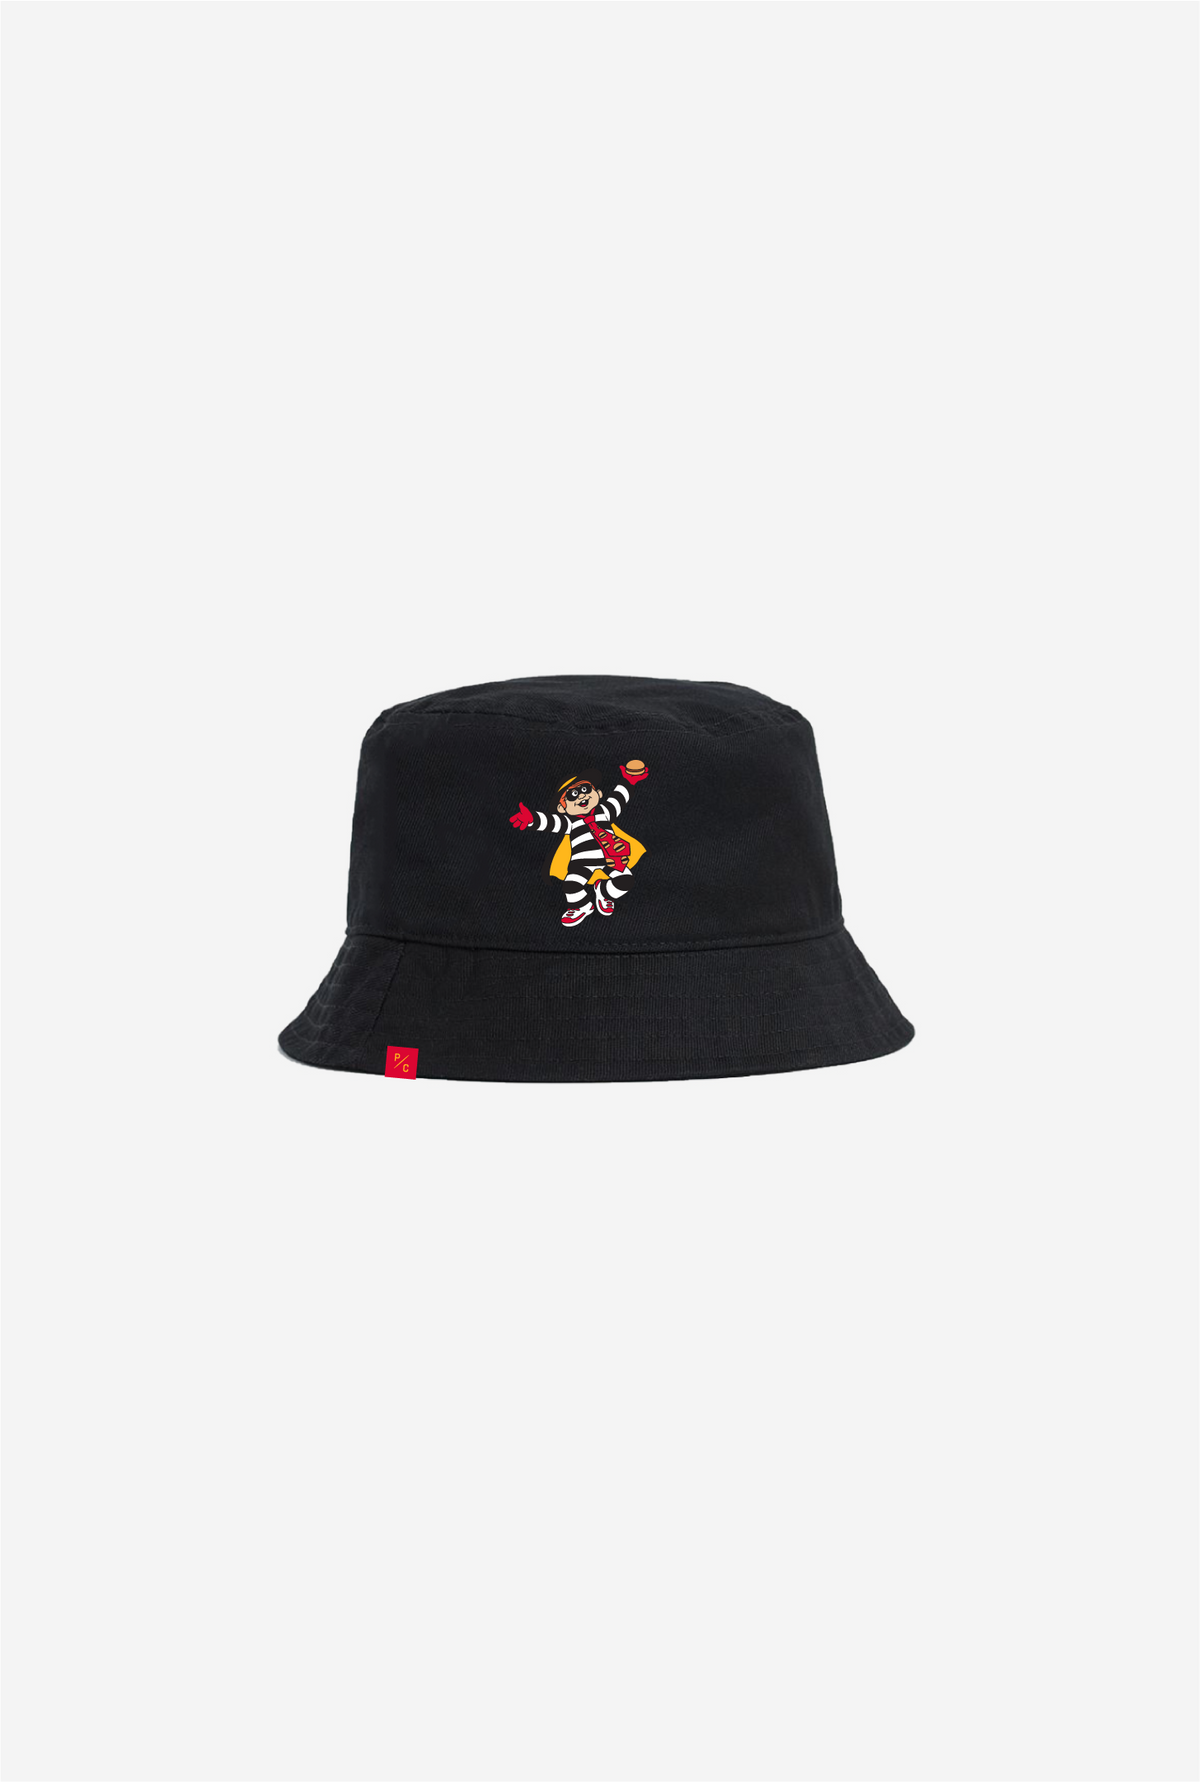 Hamburglar Bucket Hat - Black